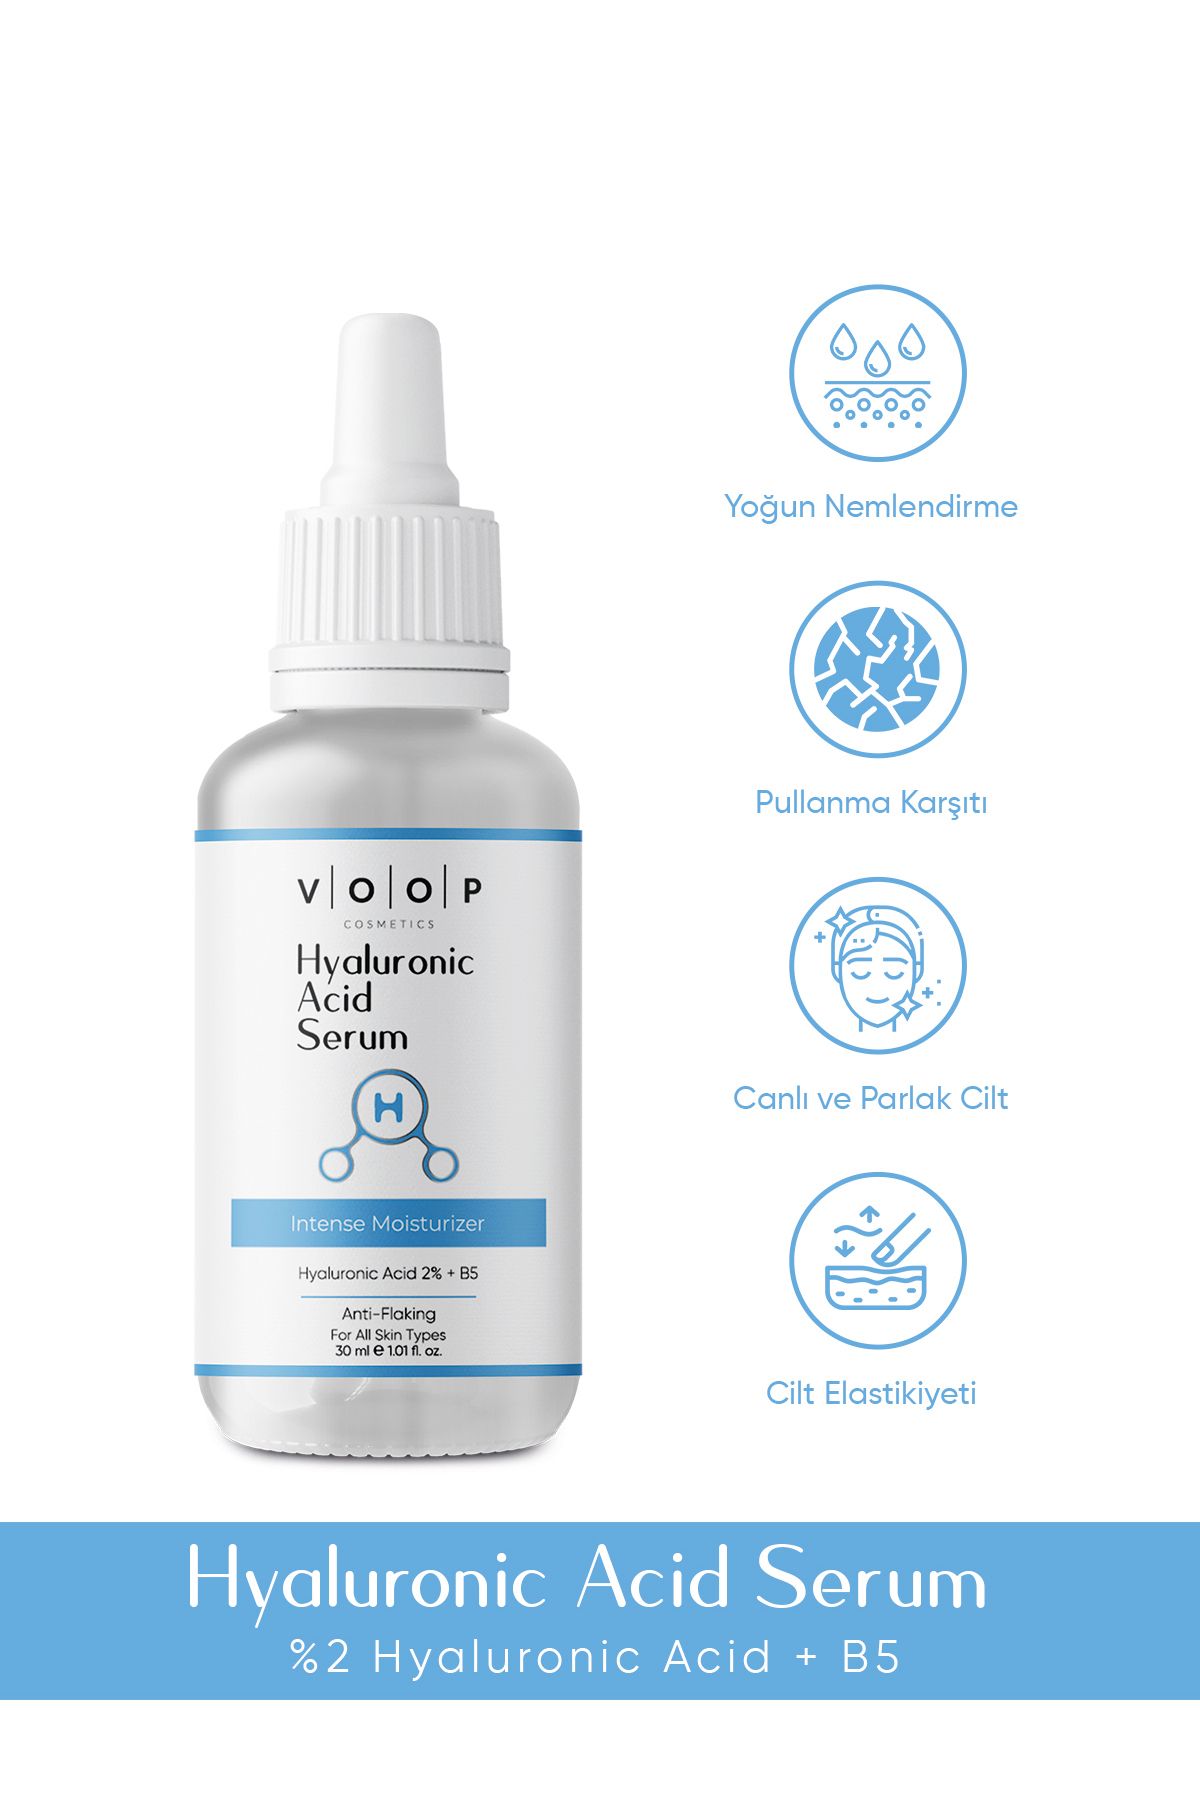 VOOP Hyaluronik Asit Serum - 30 ml Derinlemesine Yoğun Nemlendirici Yüz Bakımı%2 Hyaluronic Acid B5